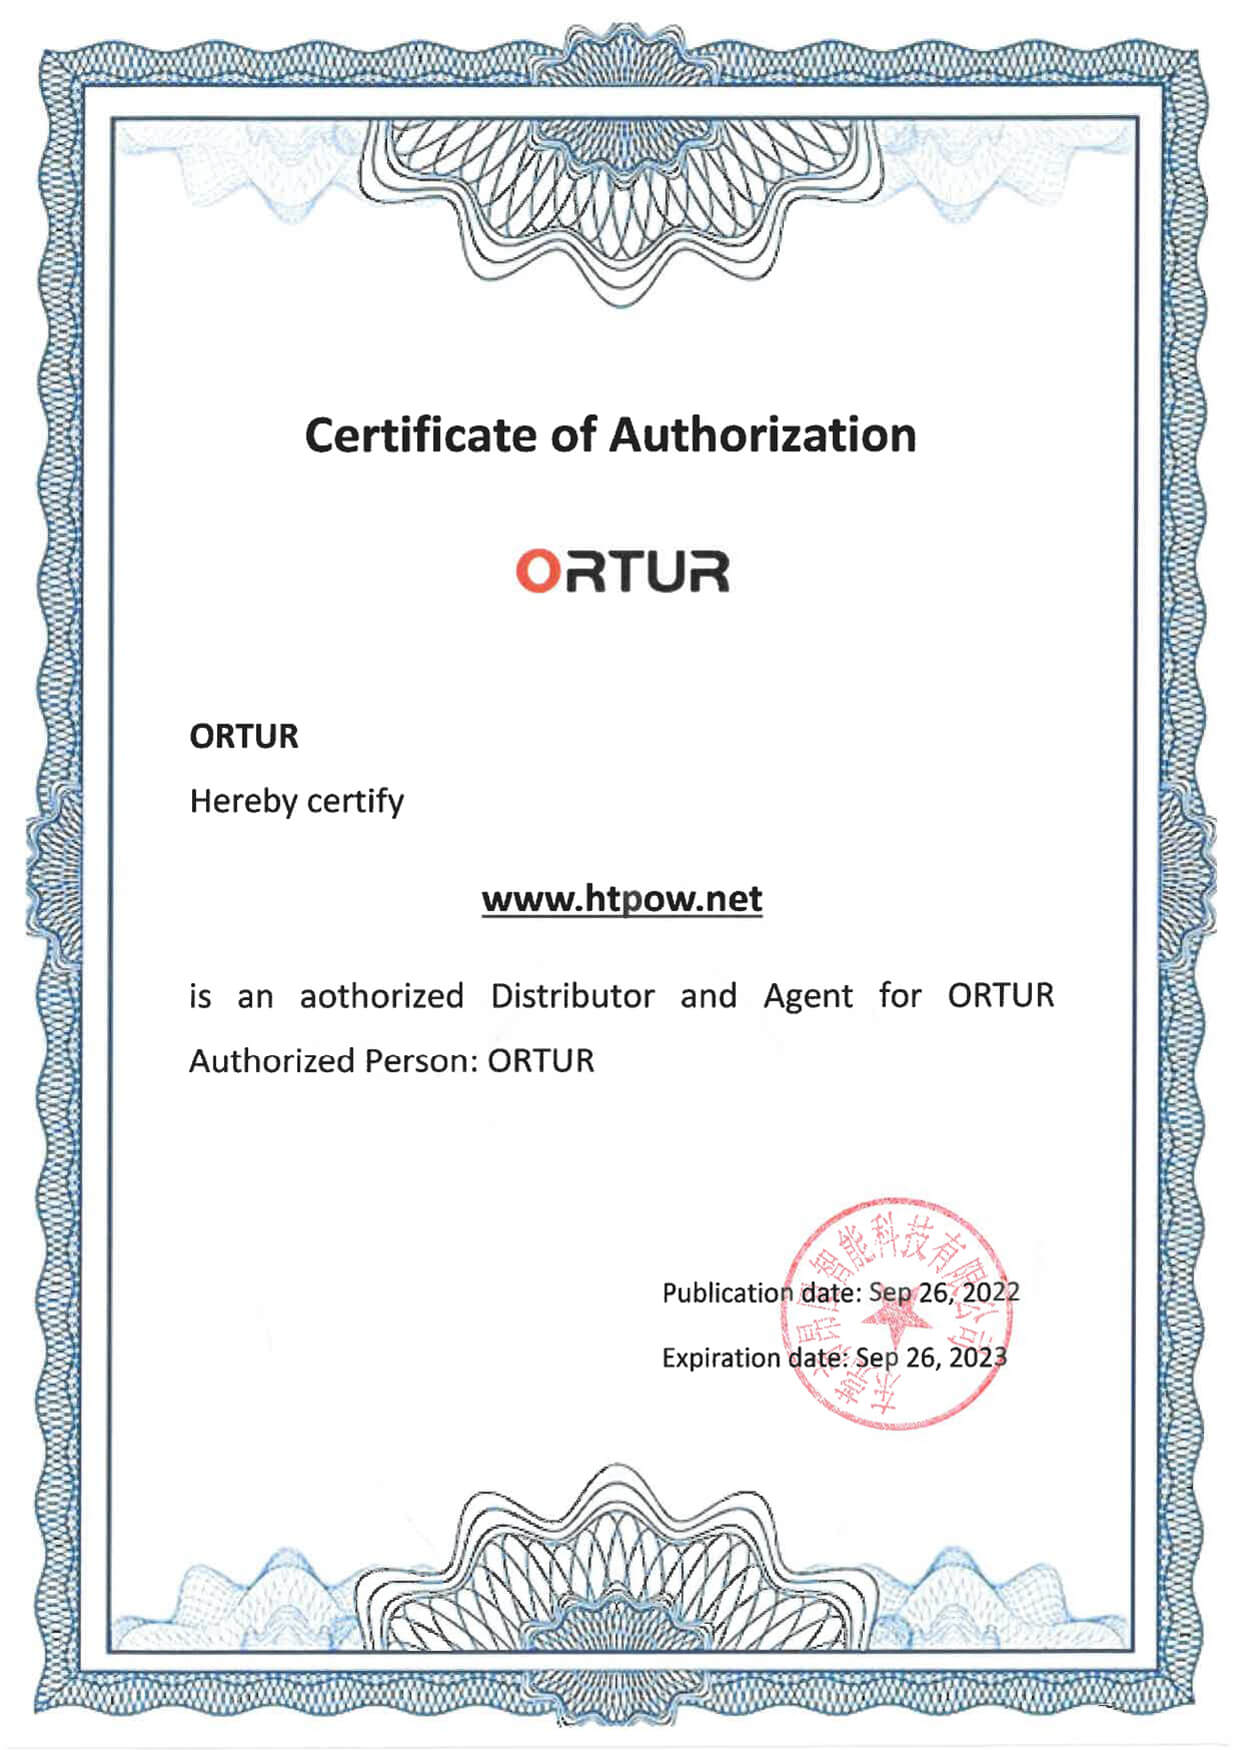 ortur certificate of authorization